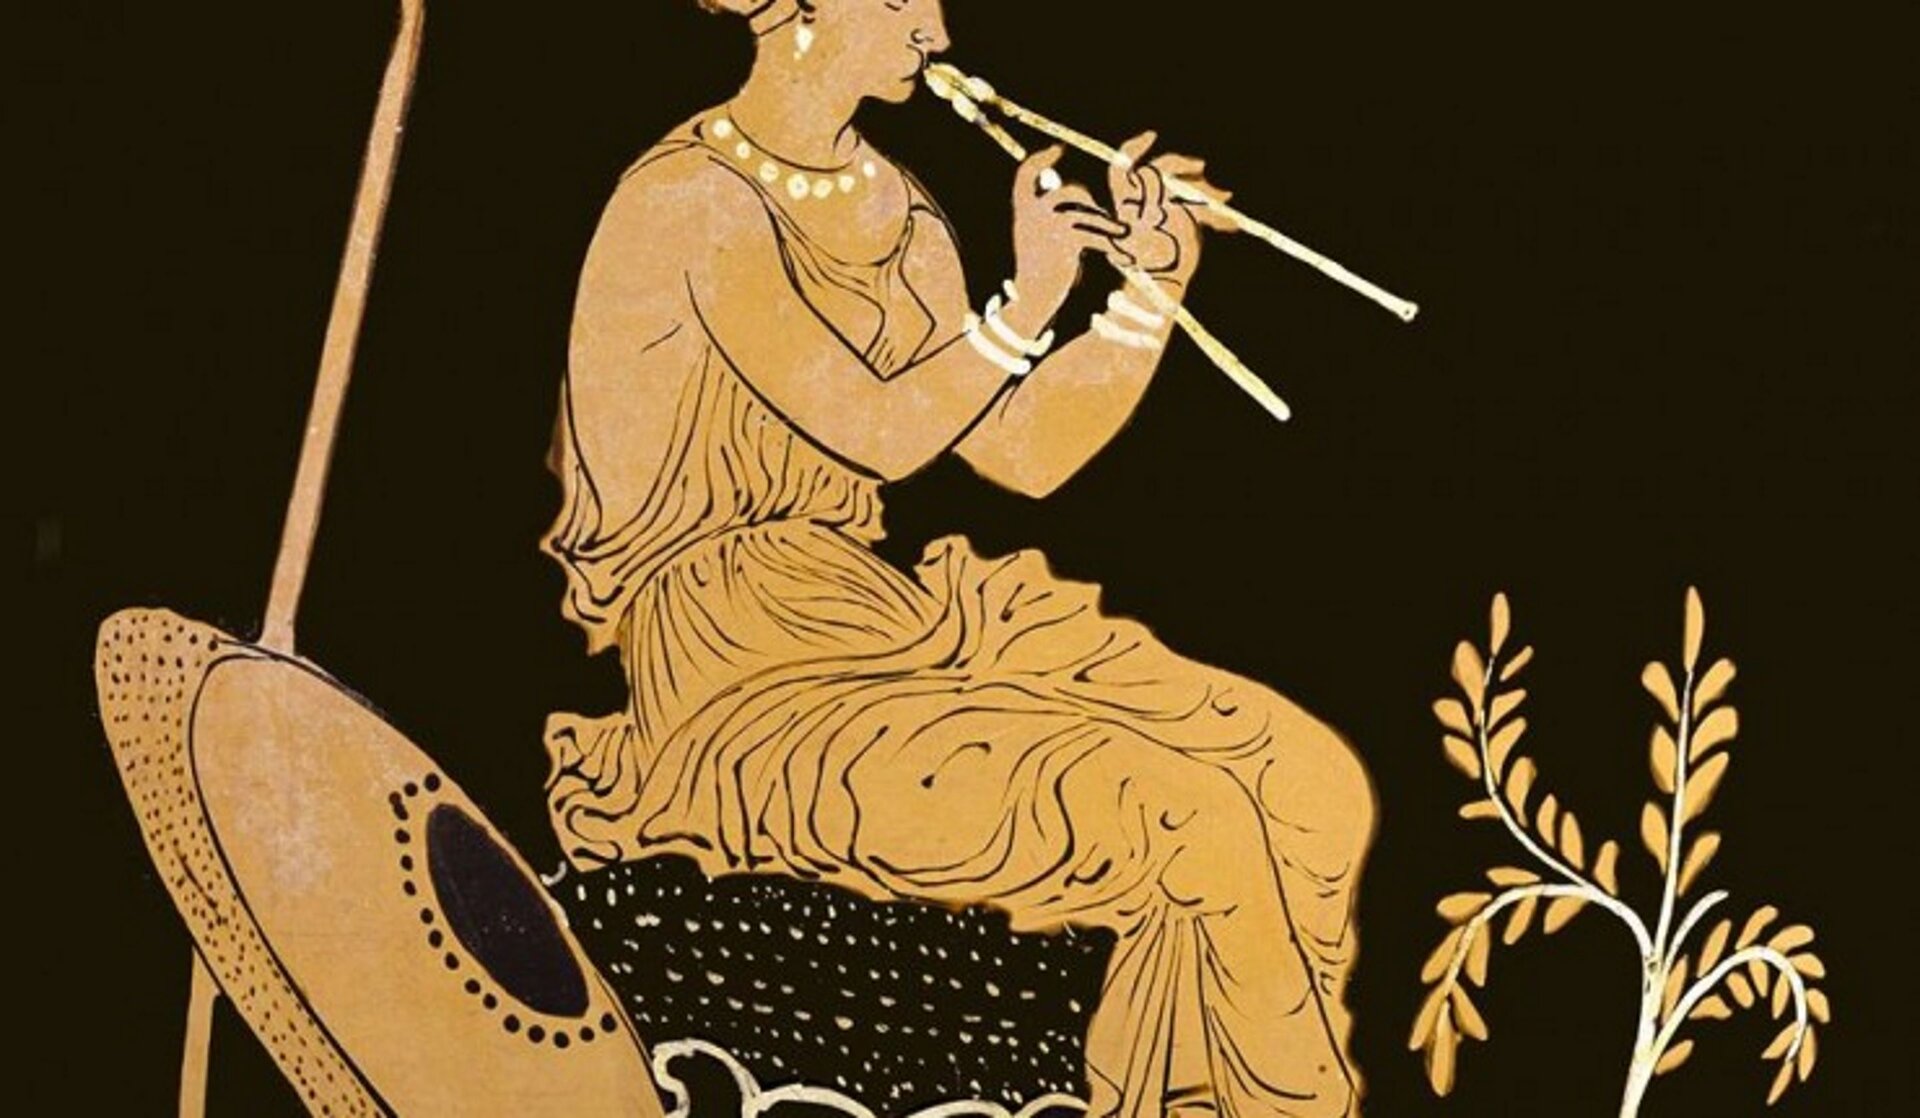 Ilustracja przedstawia siedzącą kobietę, która gra na instrumencie. Kobieta w policzkach trzyma powietrze. Ubrana jest w szatę, obok niech stoi tarcza. Instrument muzyczny widoczny na ilustracji to aulos - stanowiły go jedna lub dwie niezależne, cylindryczne piszczałki wyposażone w podwójny stroik.